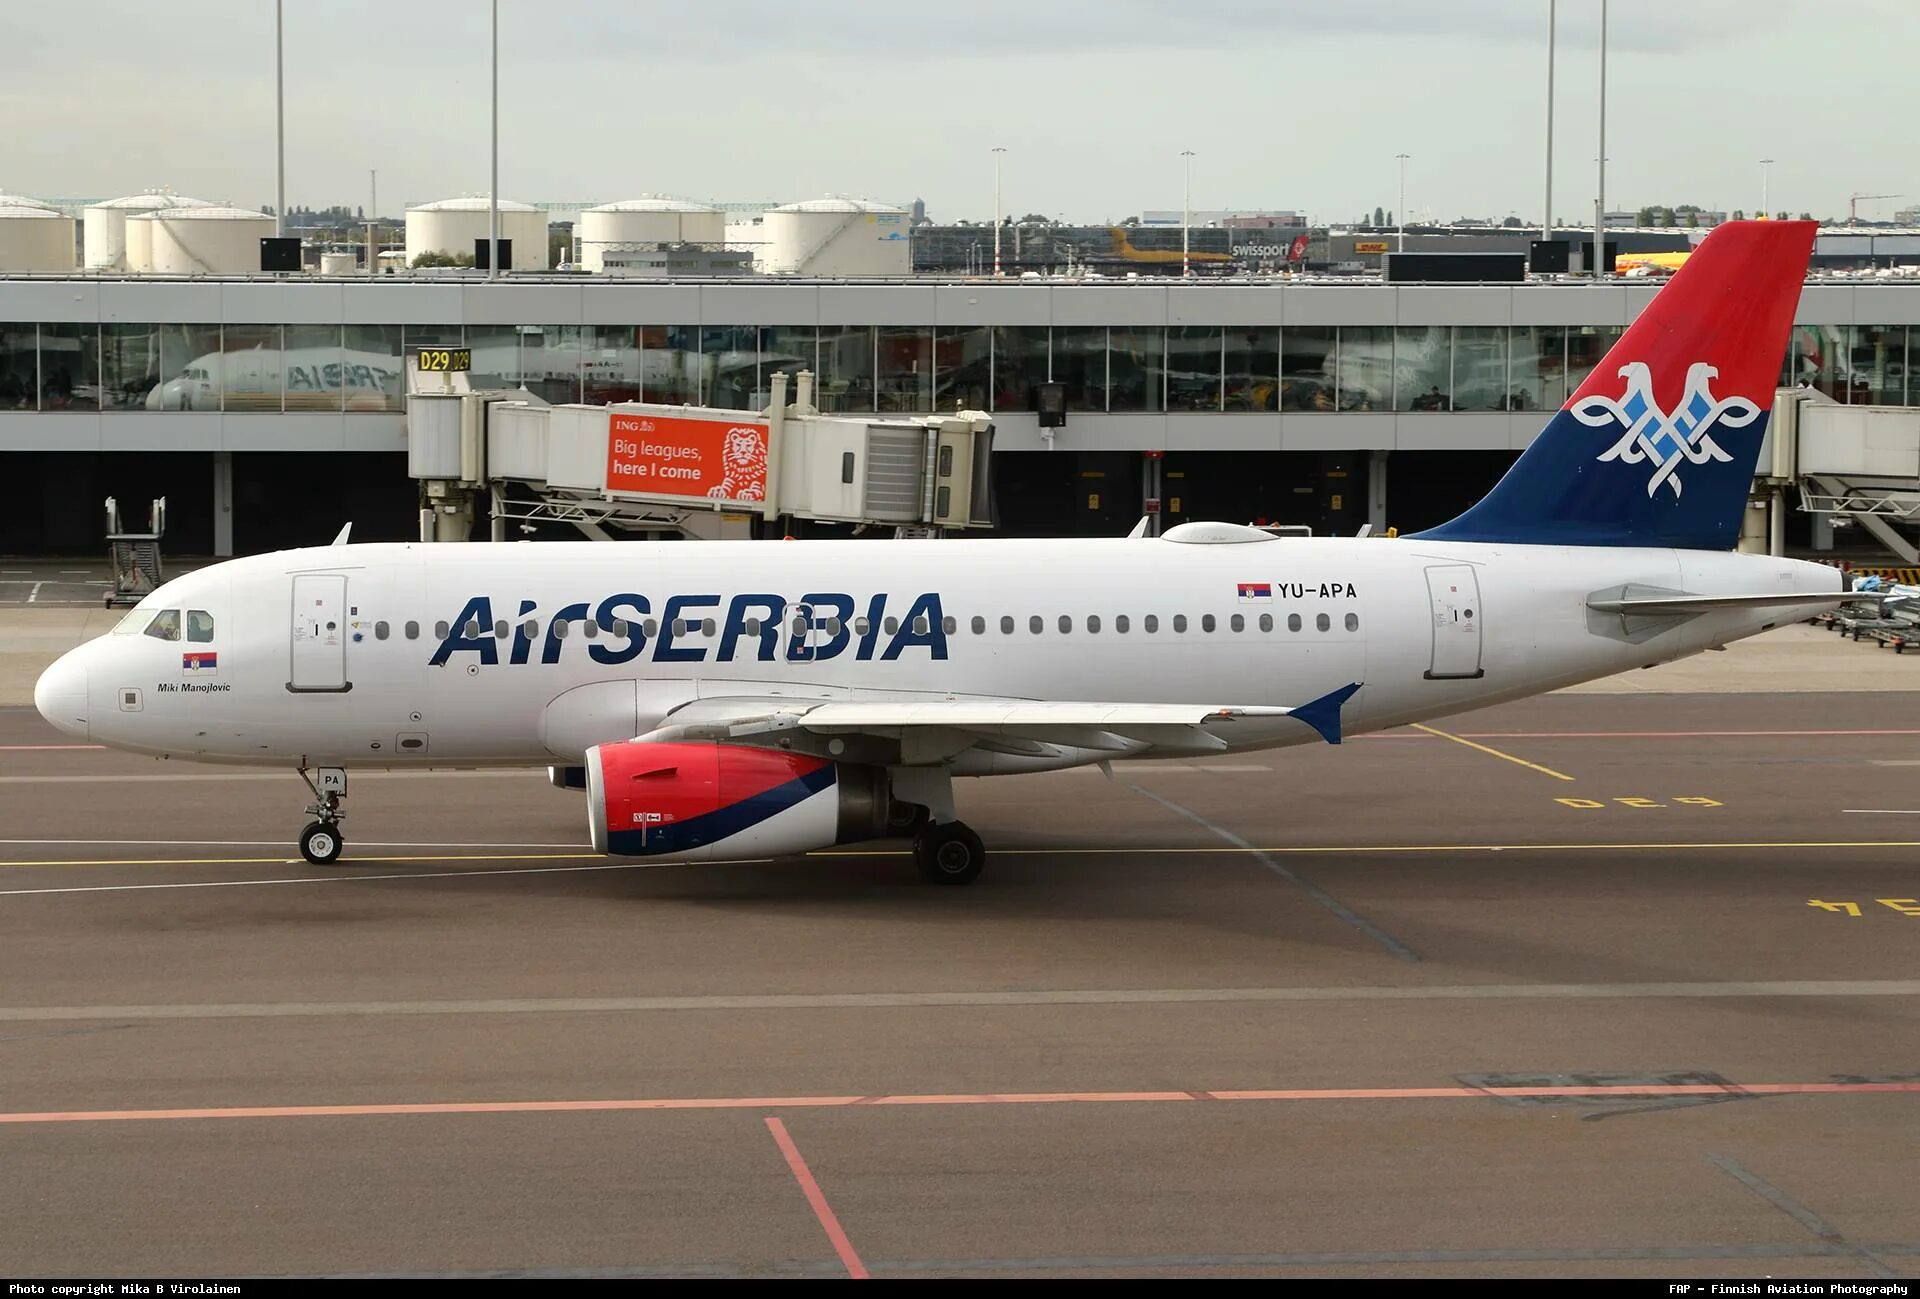 Аир сербия купить авиабилеты. Аэробус а319 АИР Сербия. Airbus a319 Air Serbia салон. Airbus a319 Air Serbia места. Аэробус а319 сербские авиалинии.